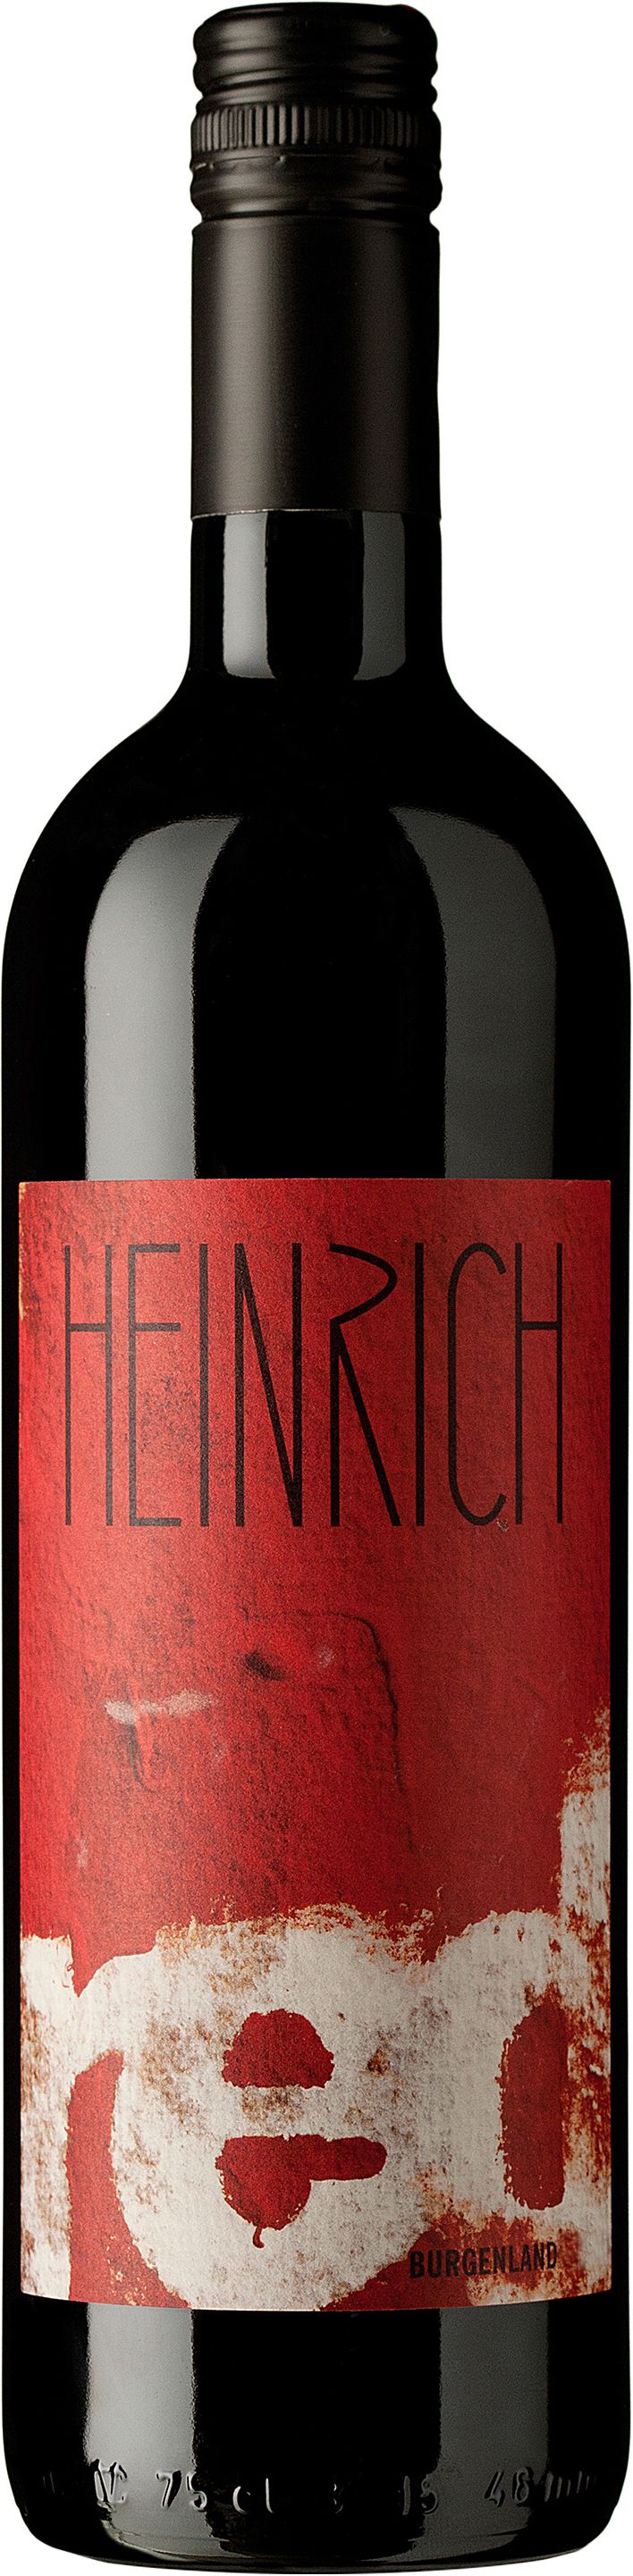 Heinrich, Red, 2014